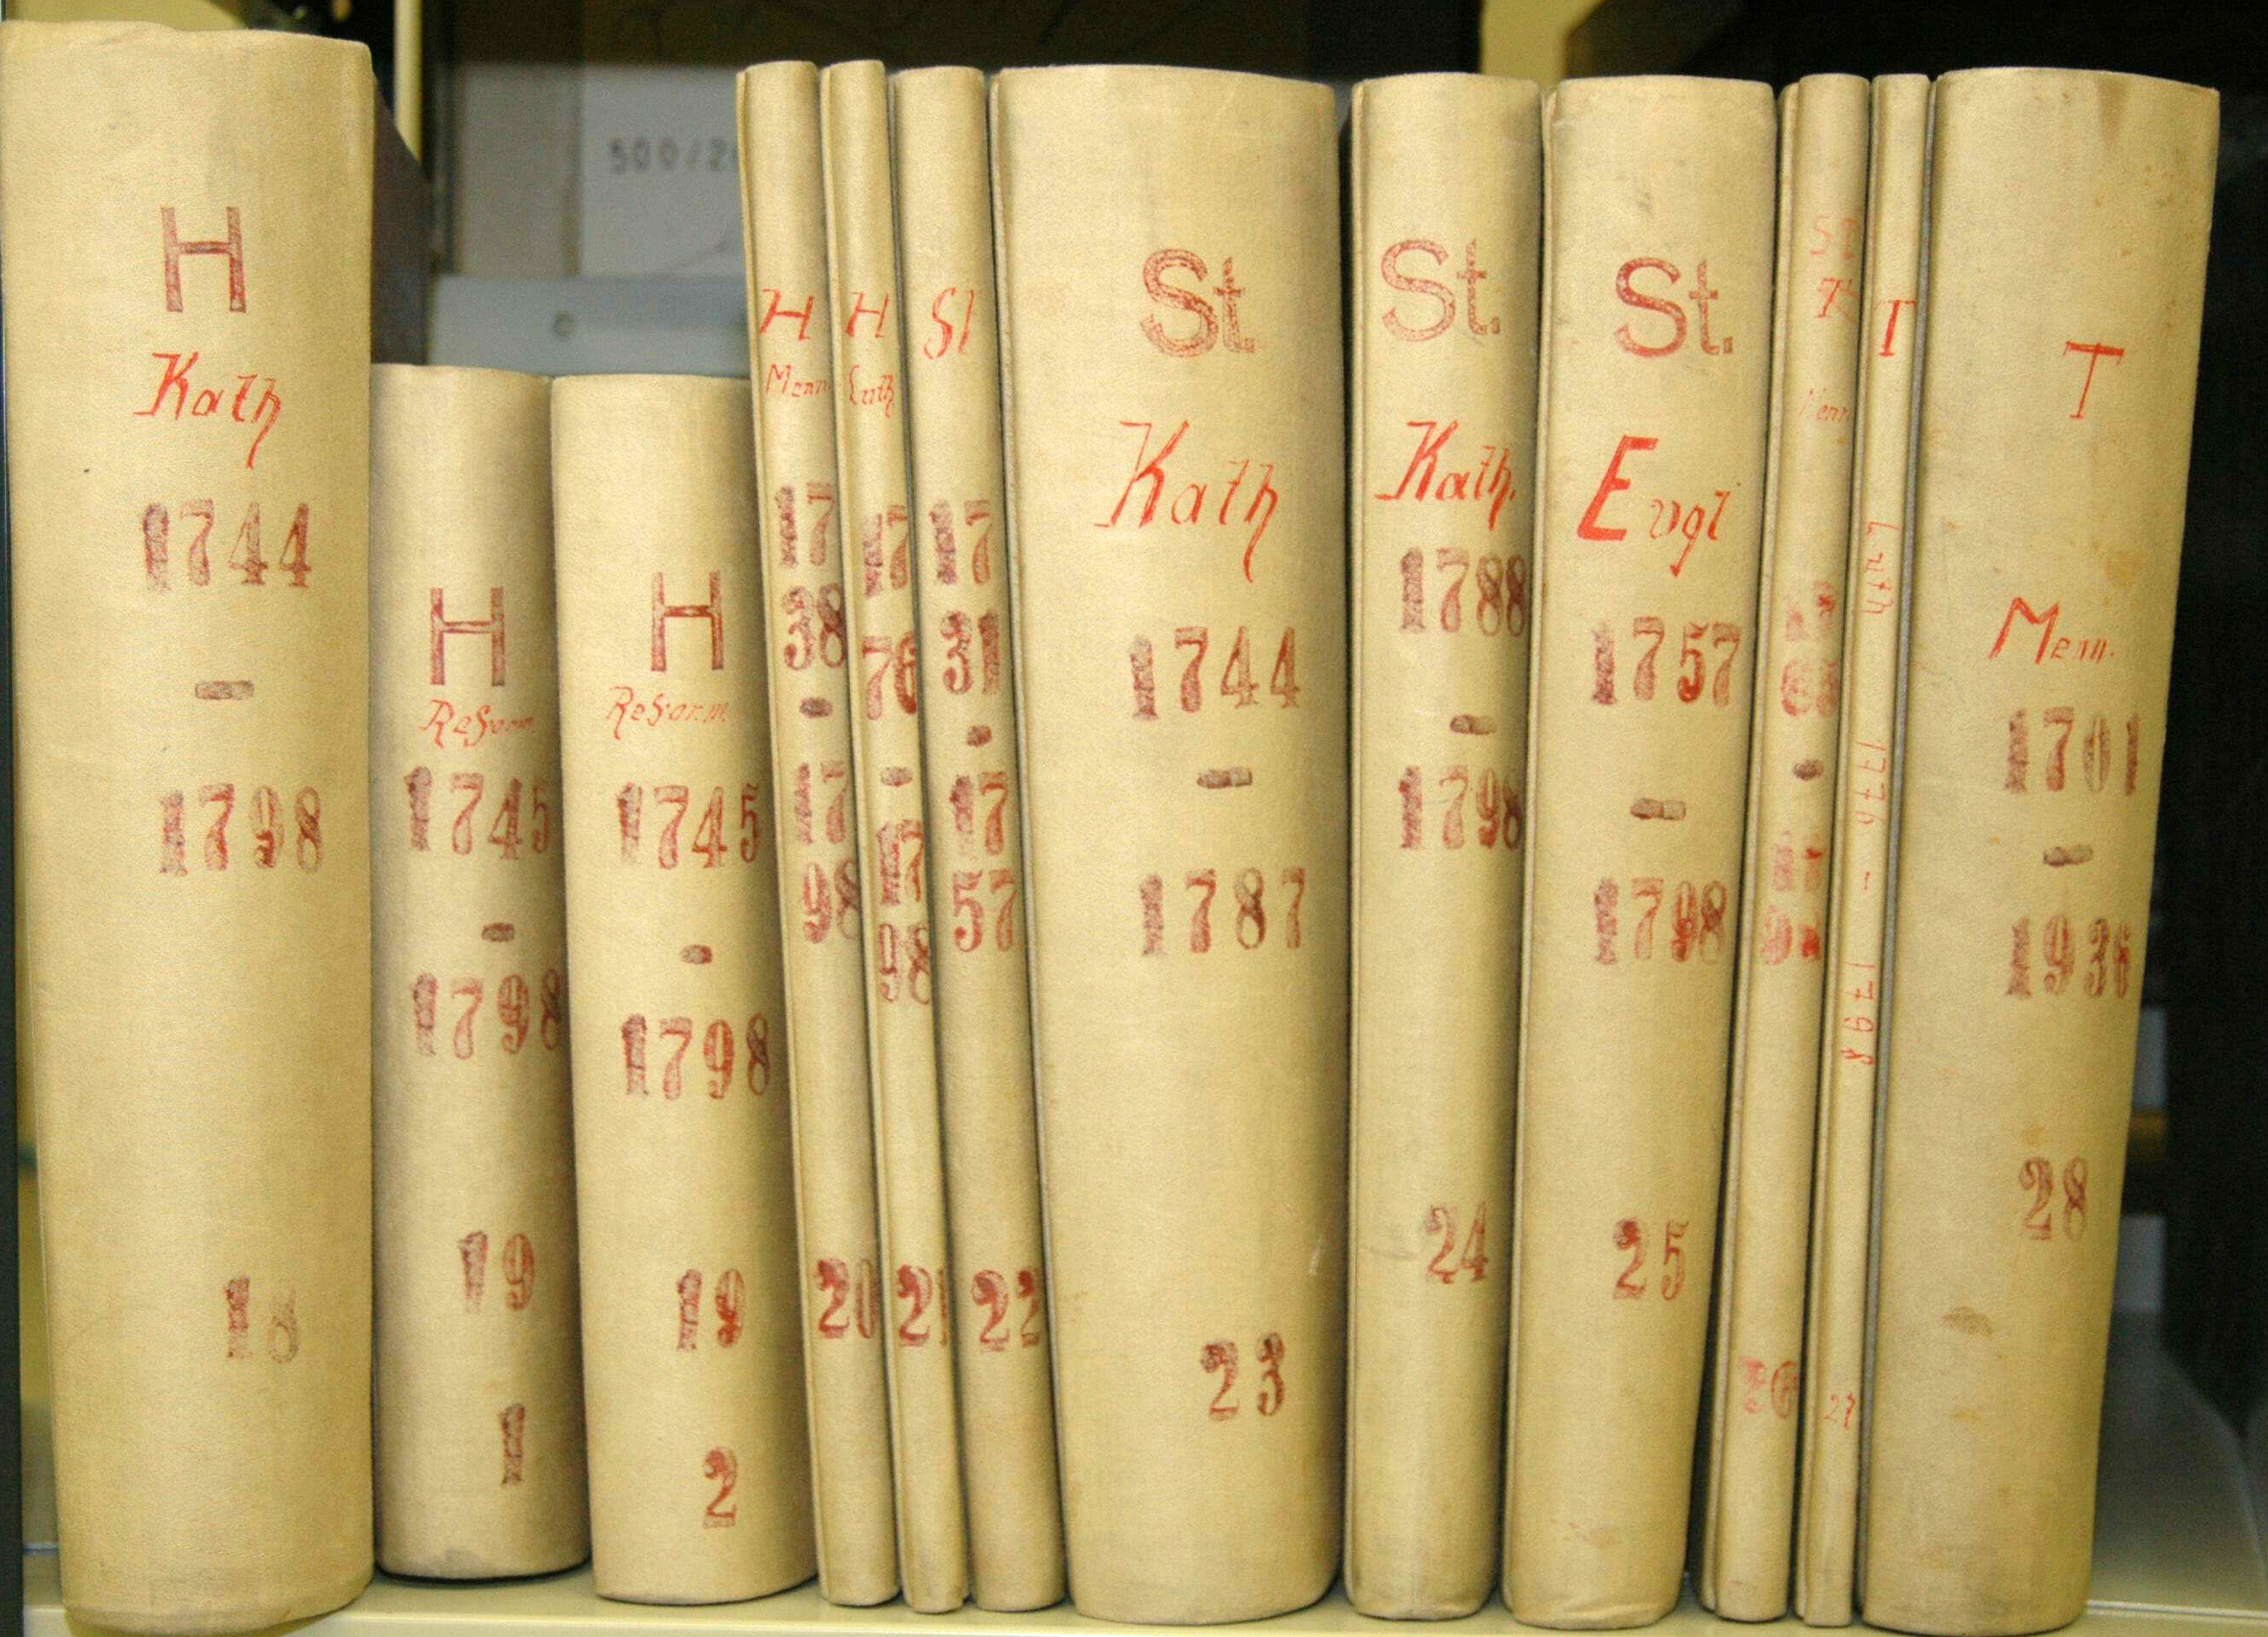 Kopien der Krefelder Kirchenbücher